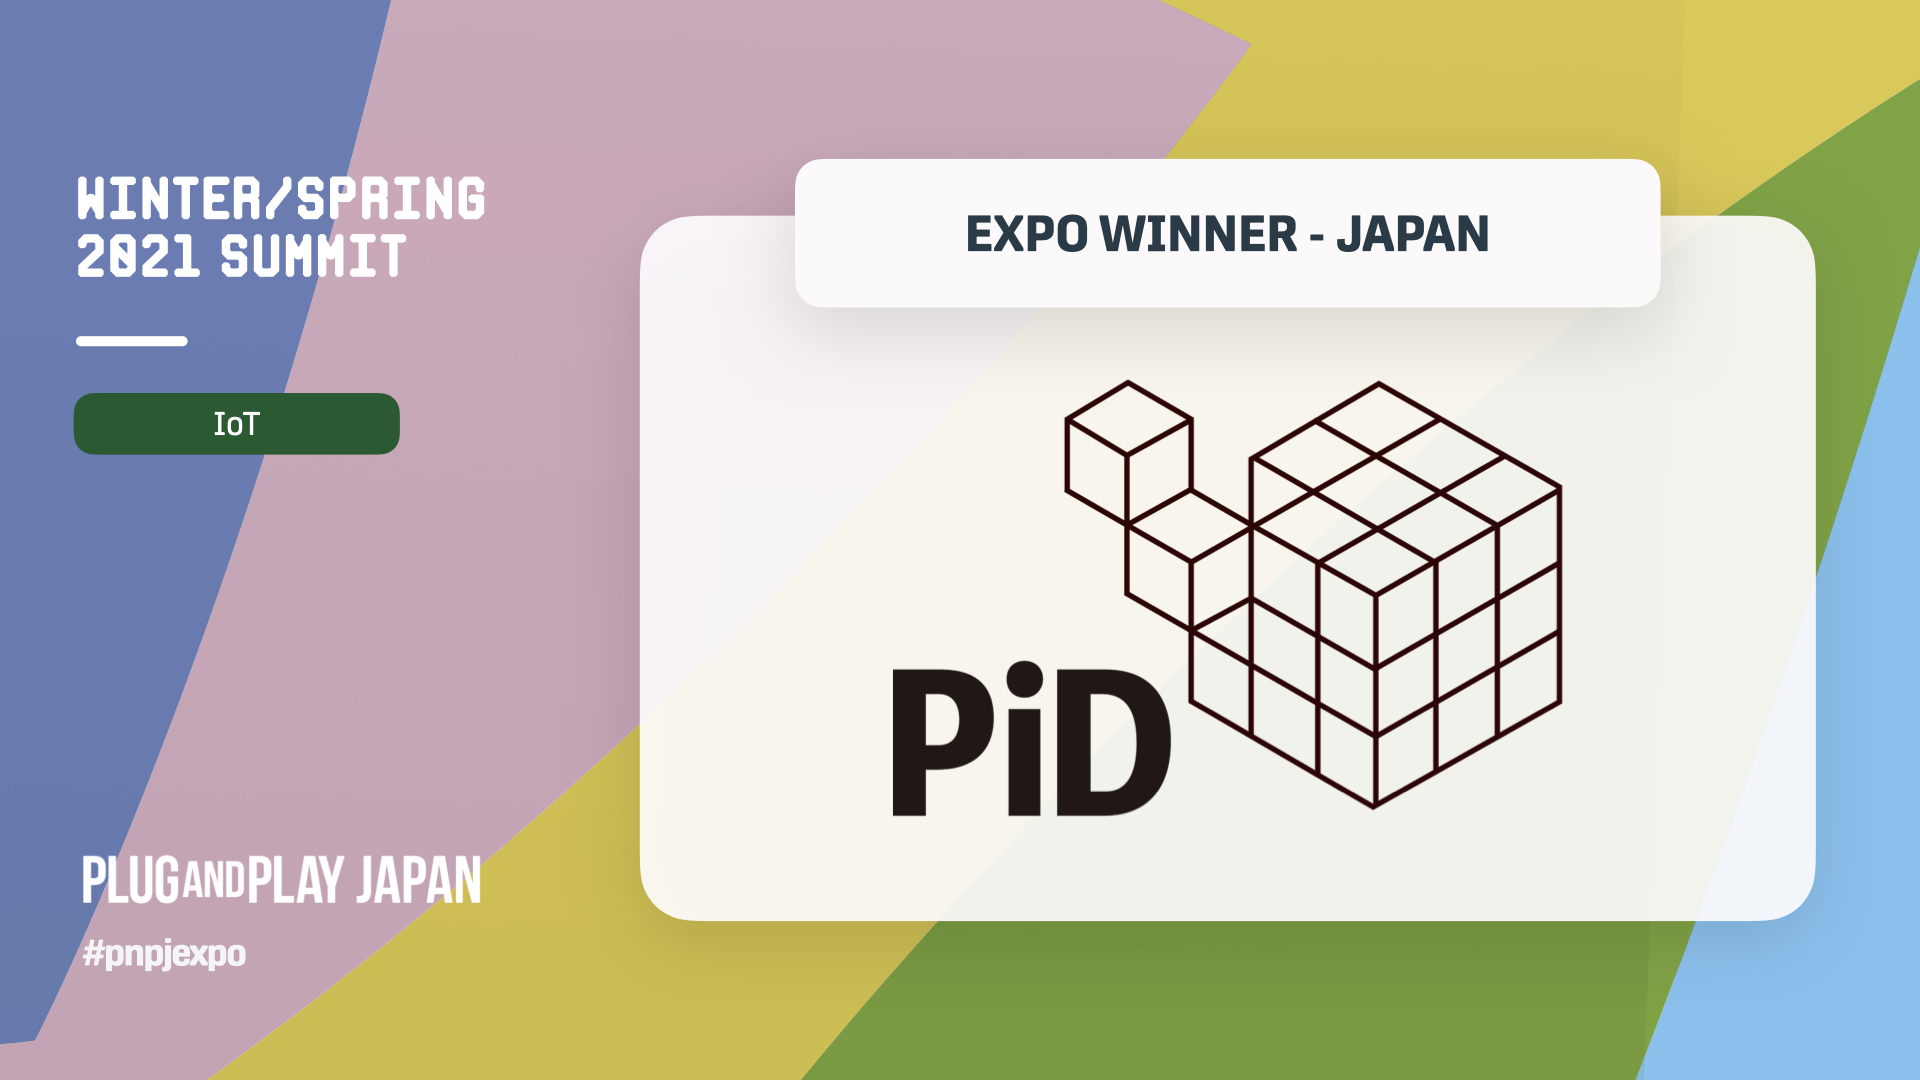 Plug and Play Japan Winter/Spring 2021 Summit のIoT部門で優勝！
大手企業との戦略的アライアンスが進んでいる。